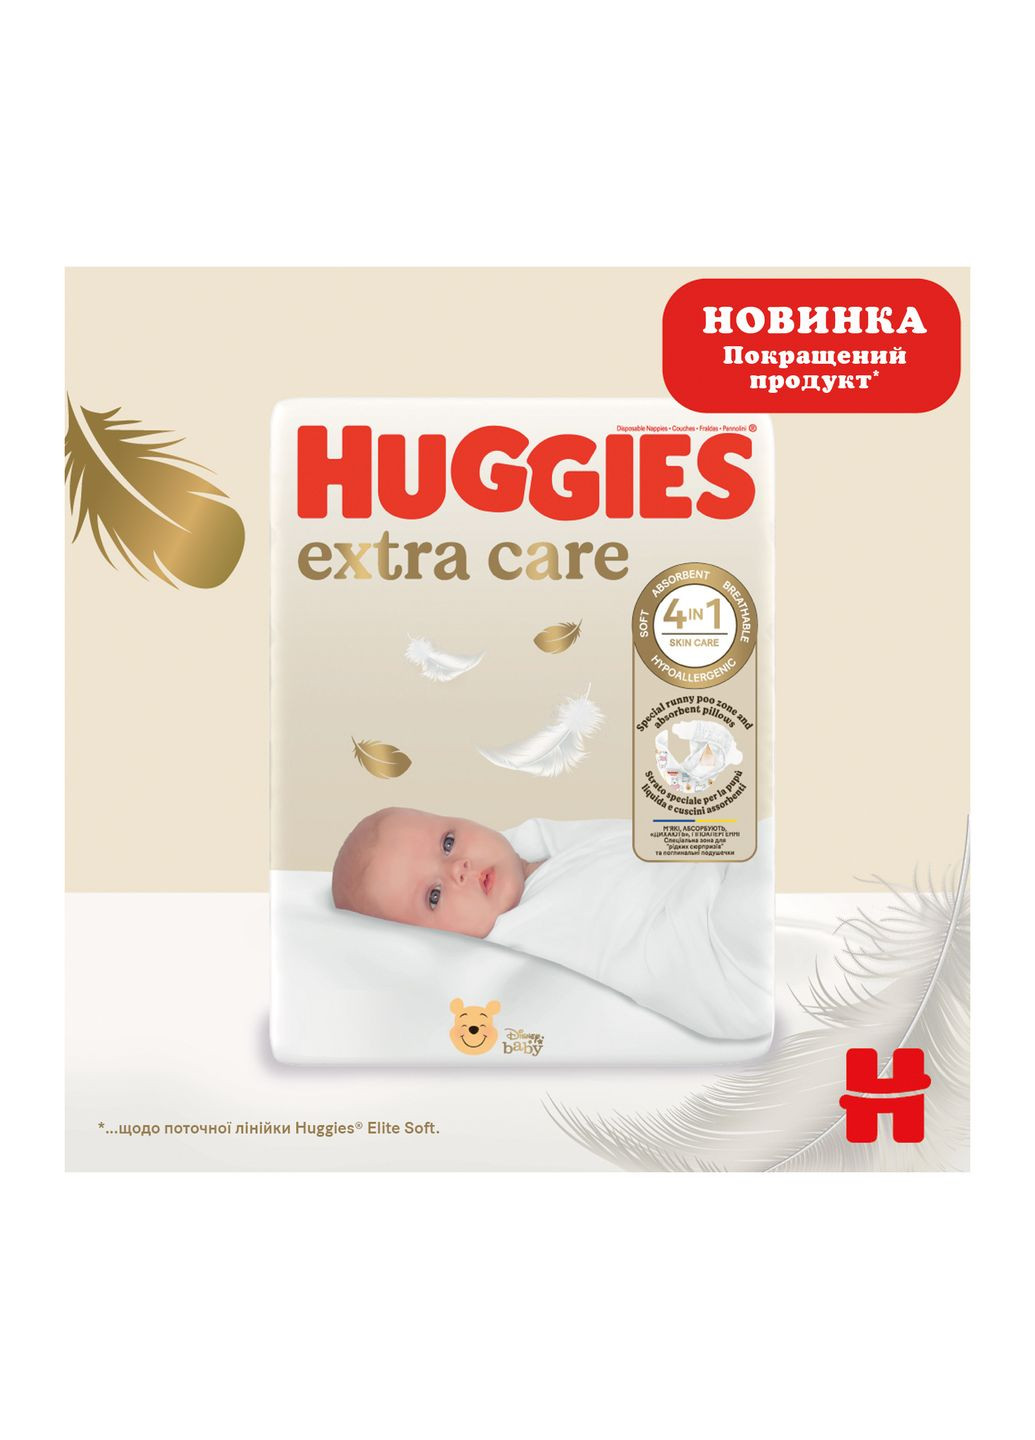 Підгузки Huggies extra care size розмір 5 (11-25 кг) 66 шт (268145265)